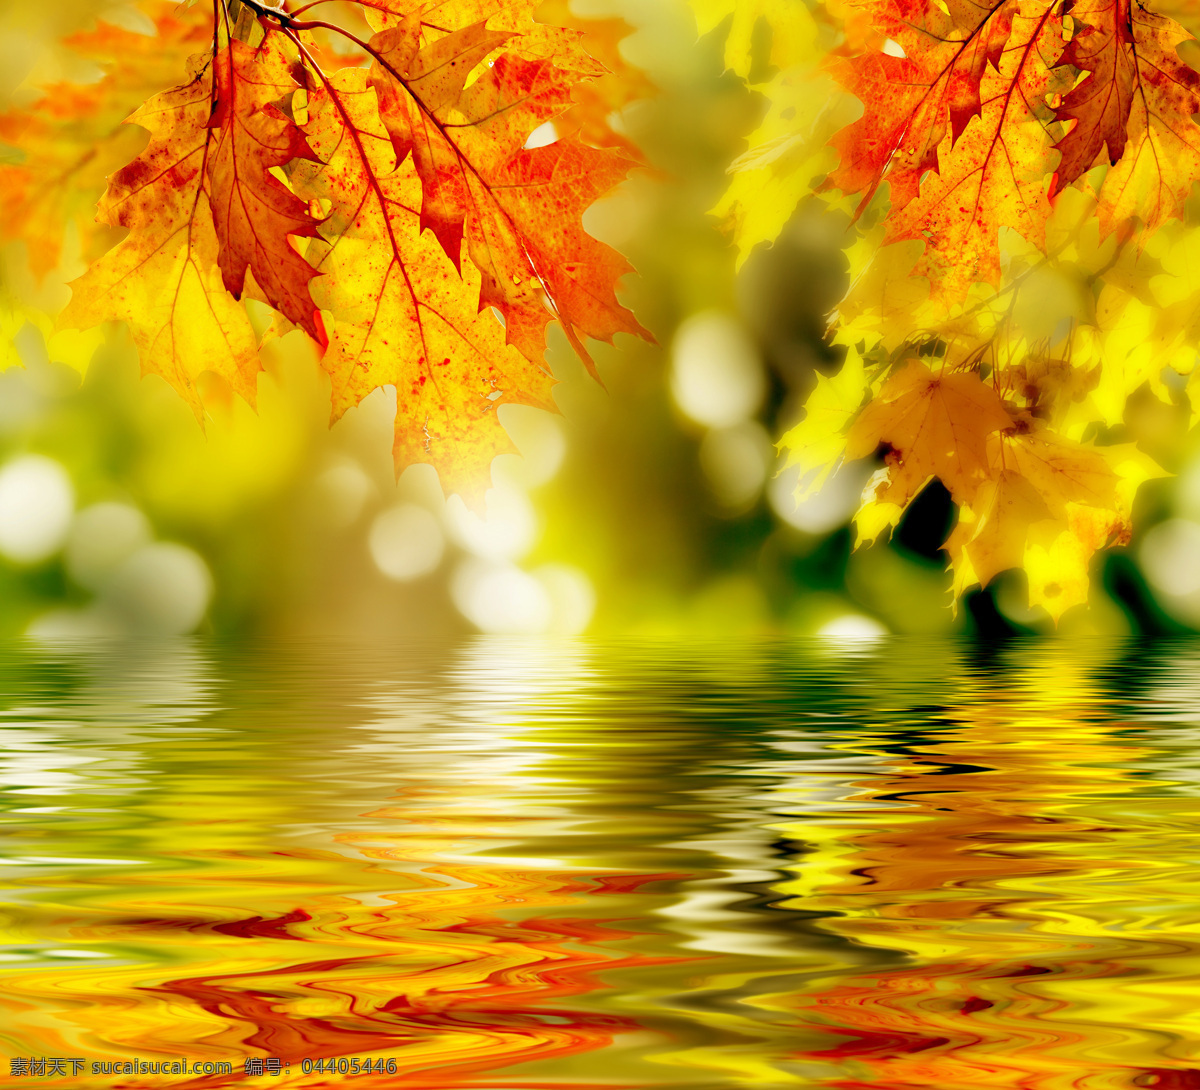 秋天 树叶 倒影 近景 高清 枫叶 湖面 水波 特写 风景 生活 旅游餐饮